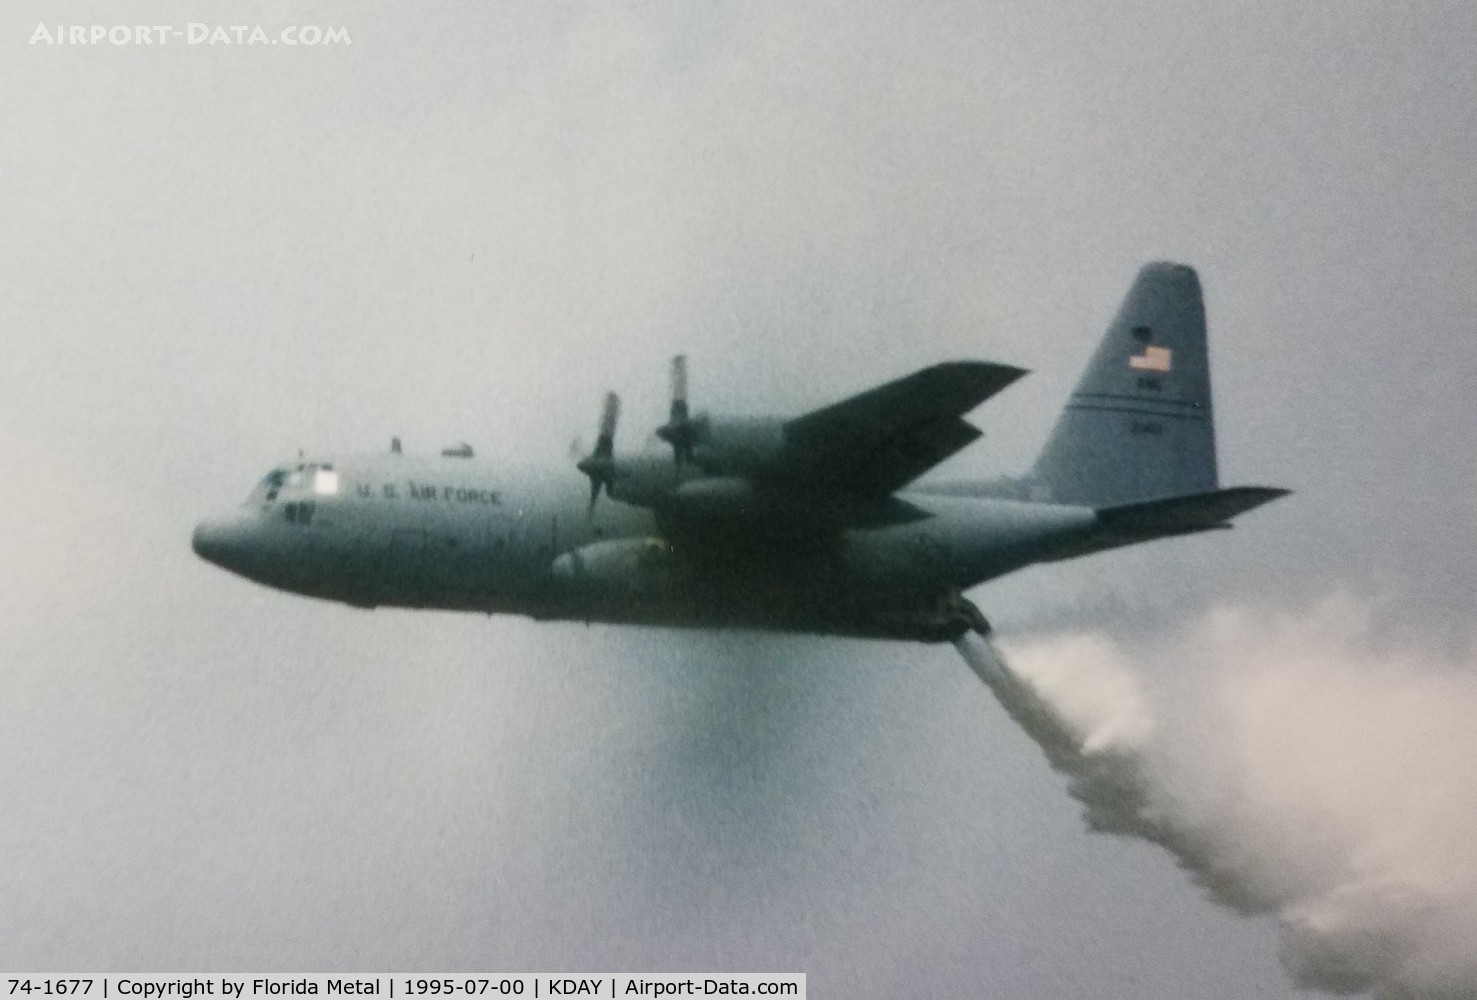 74-1677, 1974 Lockheed C-130H Hercules C/N 382-4643, C-130H zx